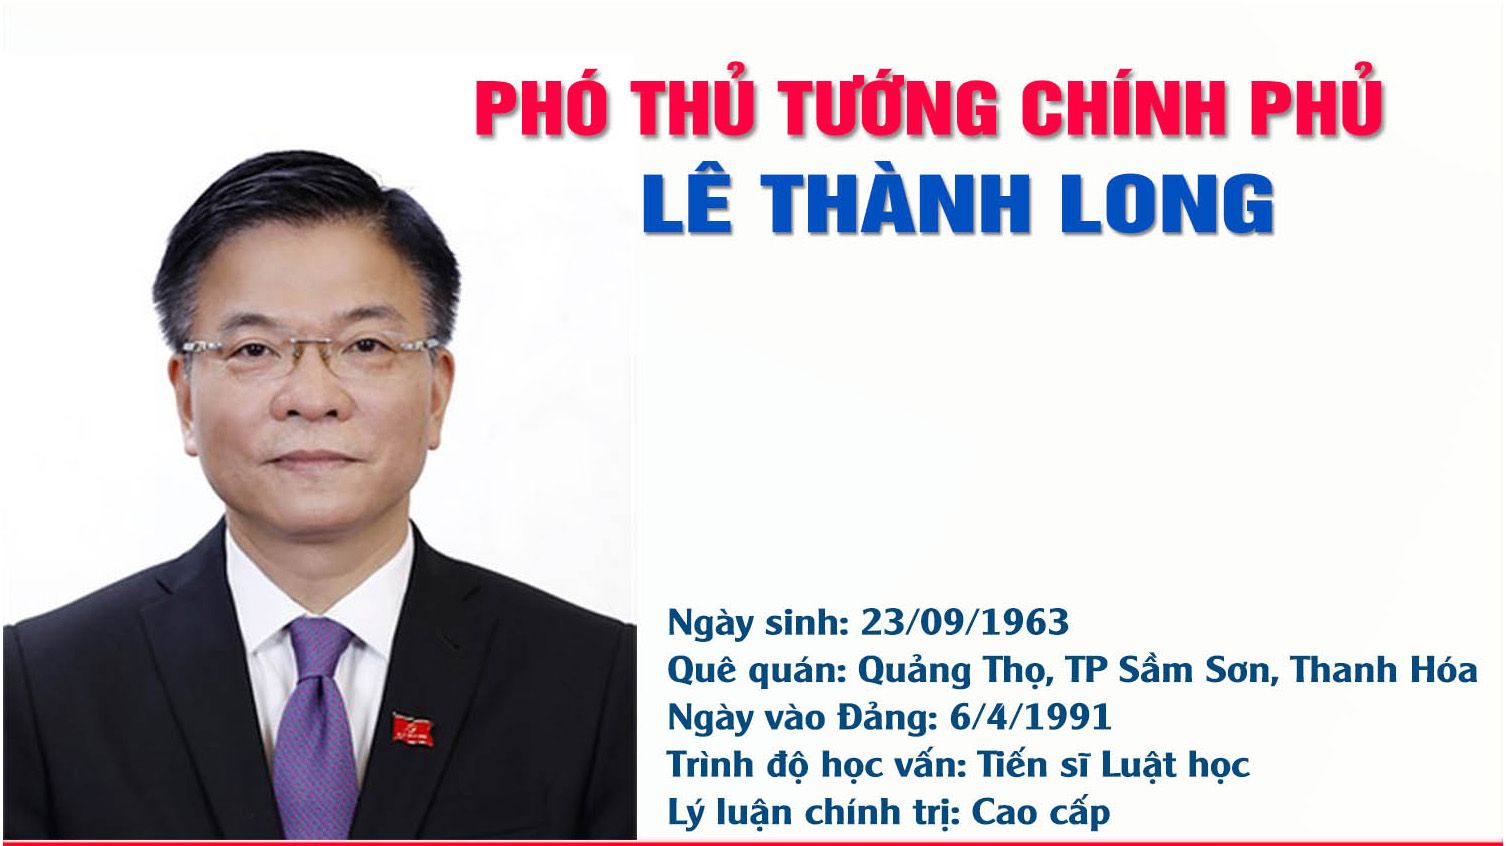 [Infographic] Phó Thủ tướng Chính phủ Lê Thành Long